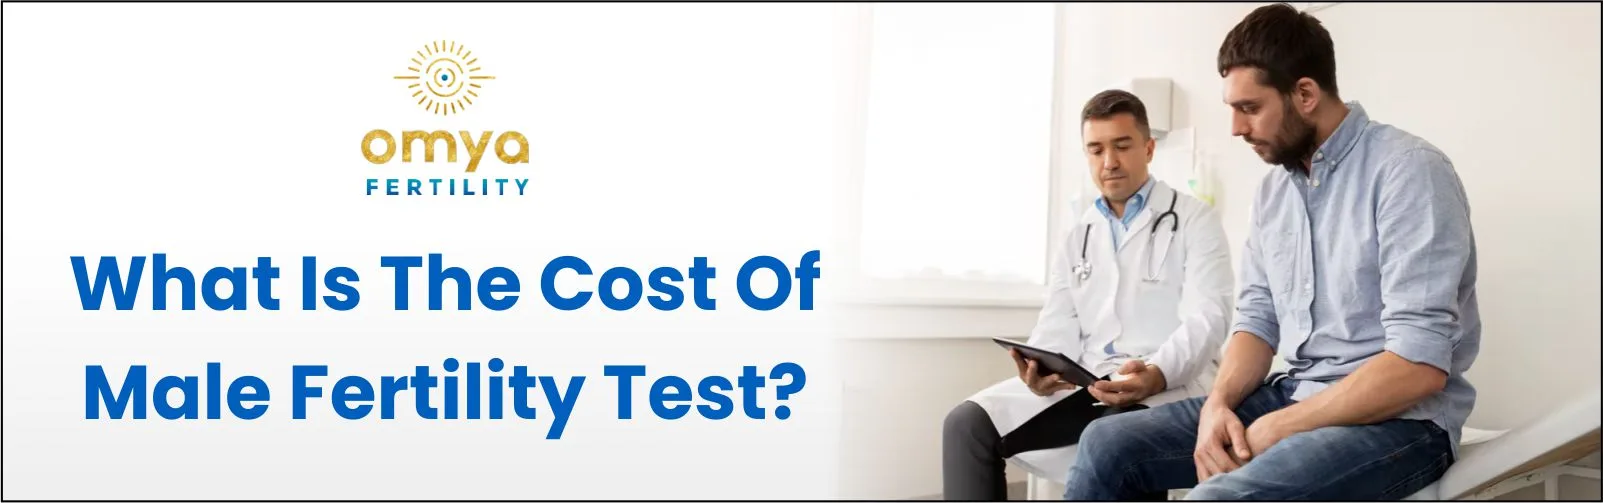 cost-of-male-fertility-test